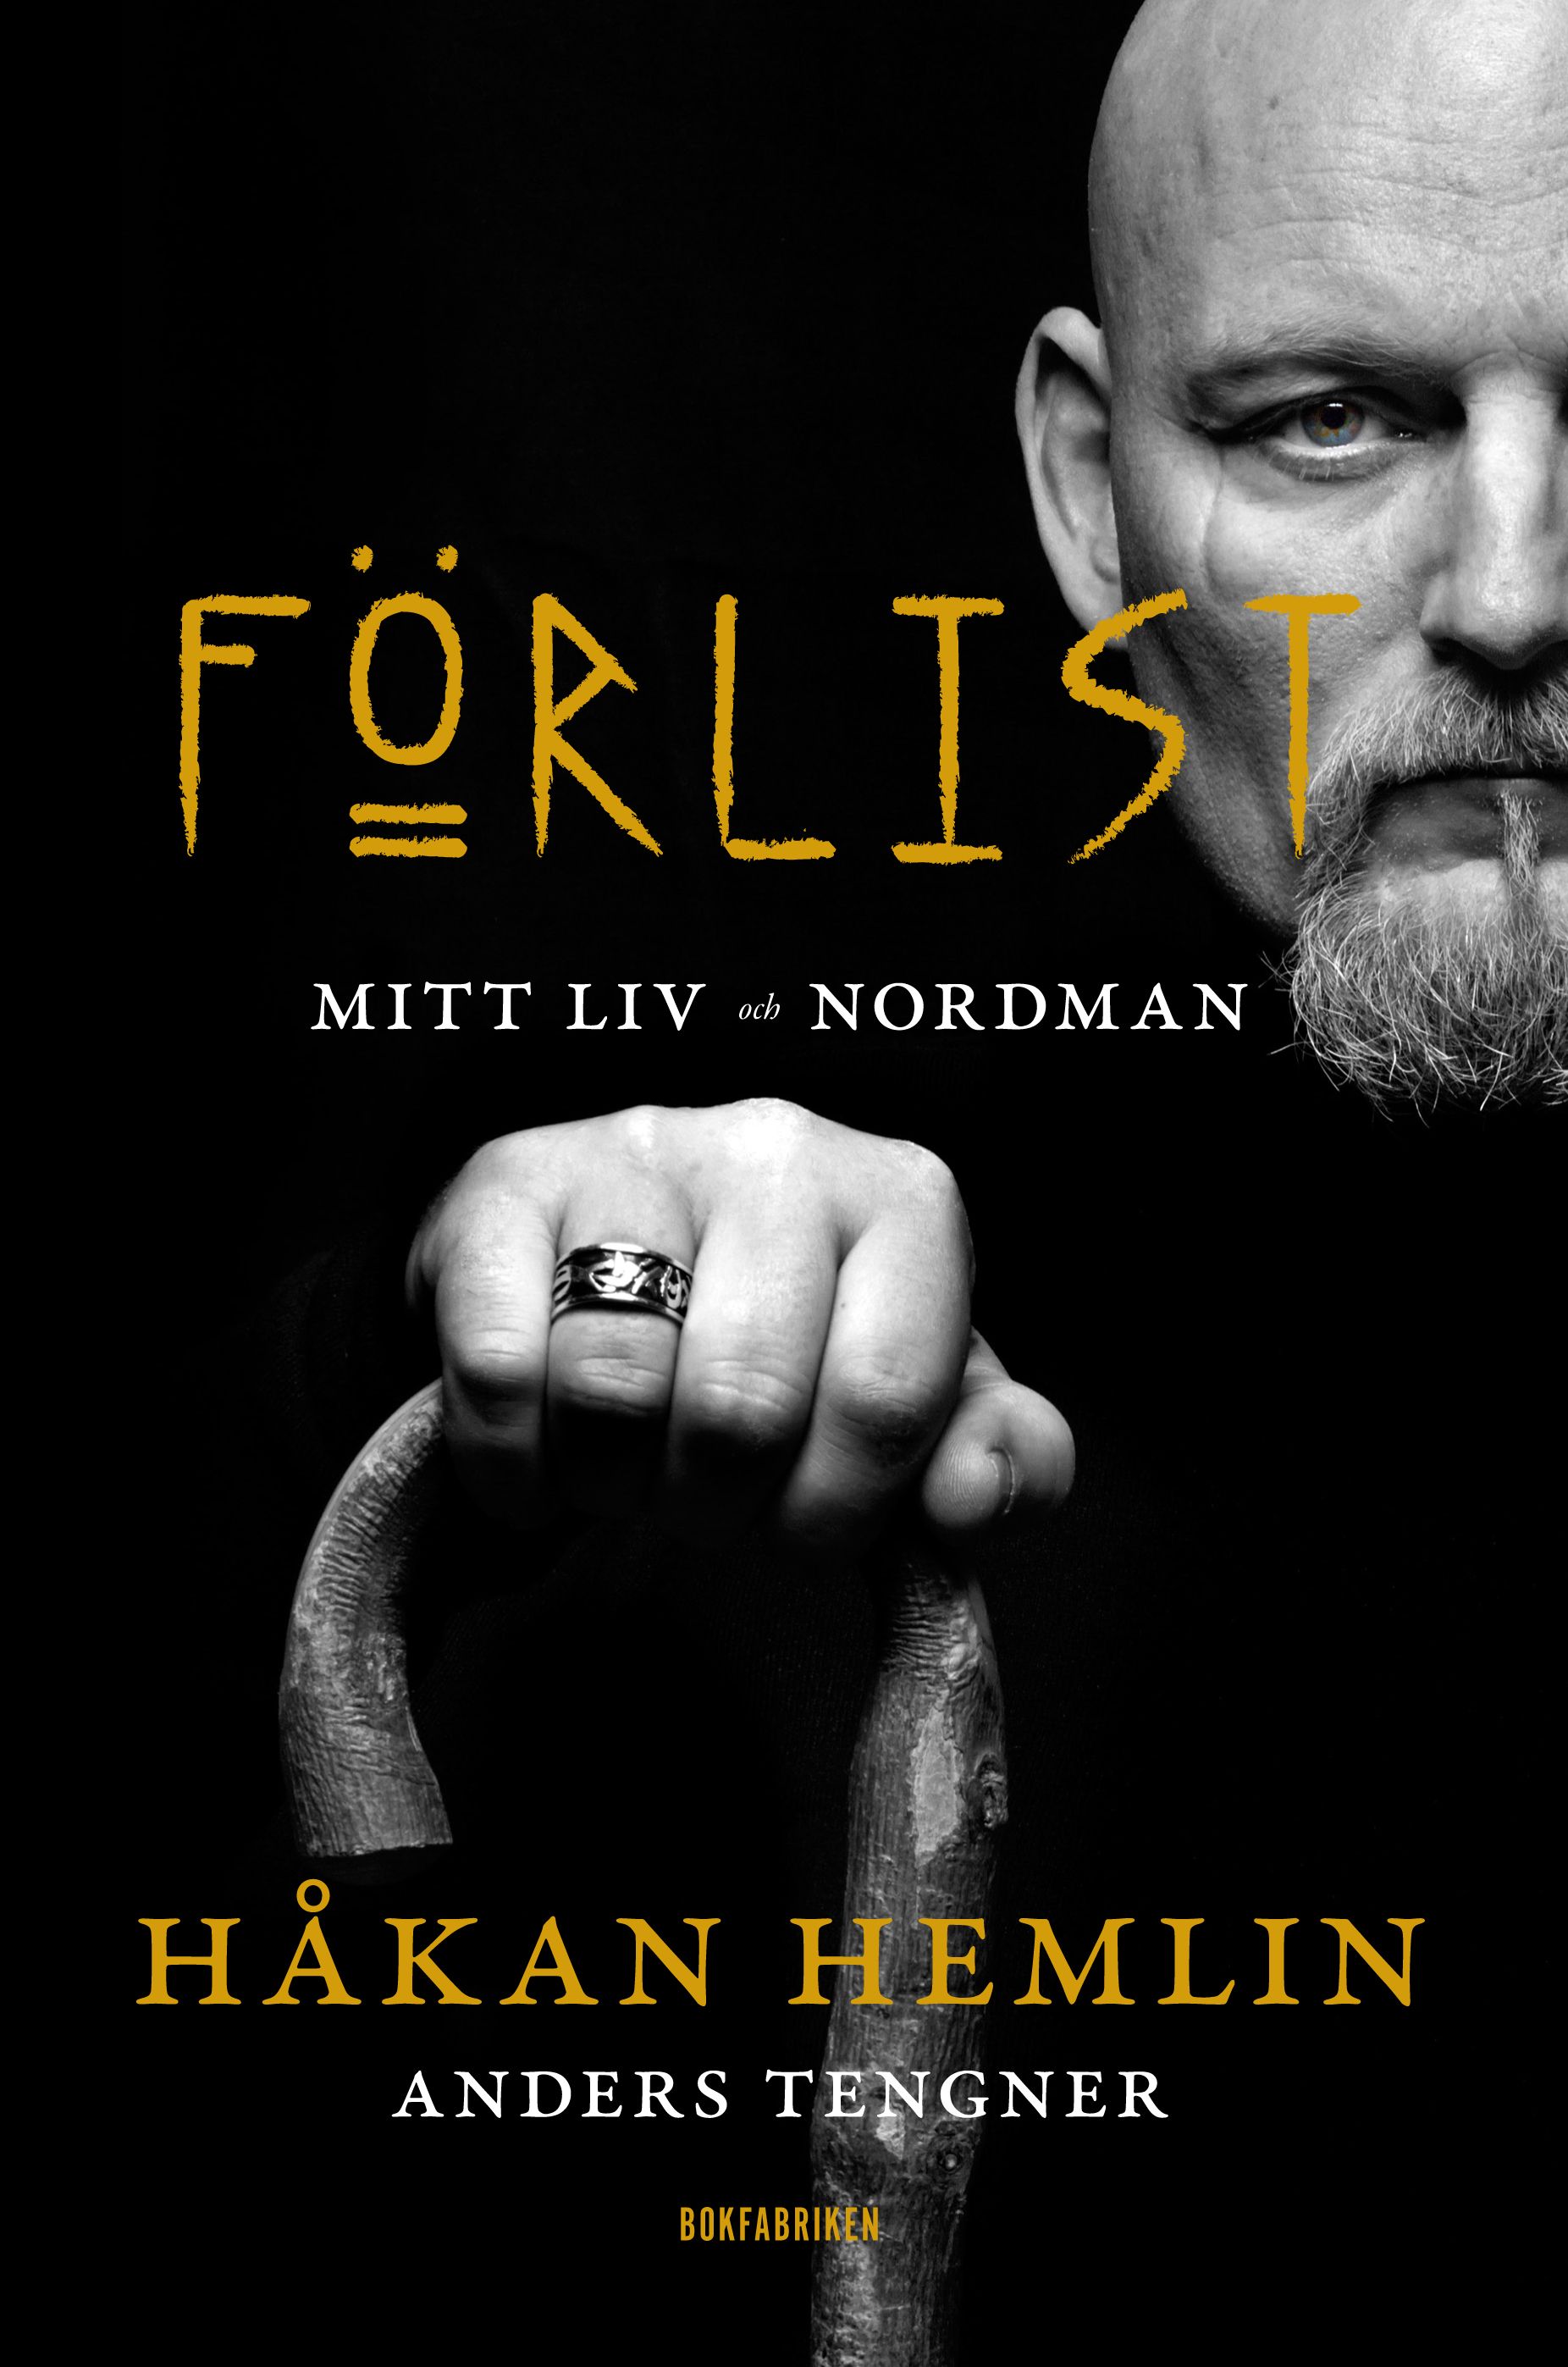 Förlist : Mitt liv och Nordman, e-bog af Håkan Hemlin, Anders Tengner